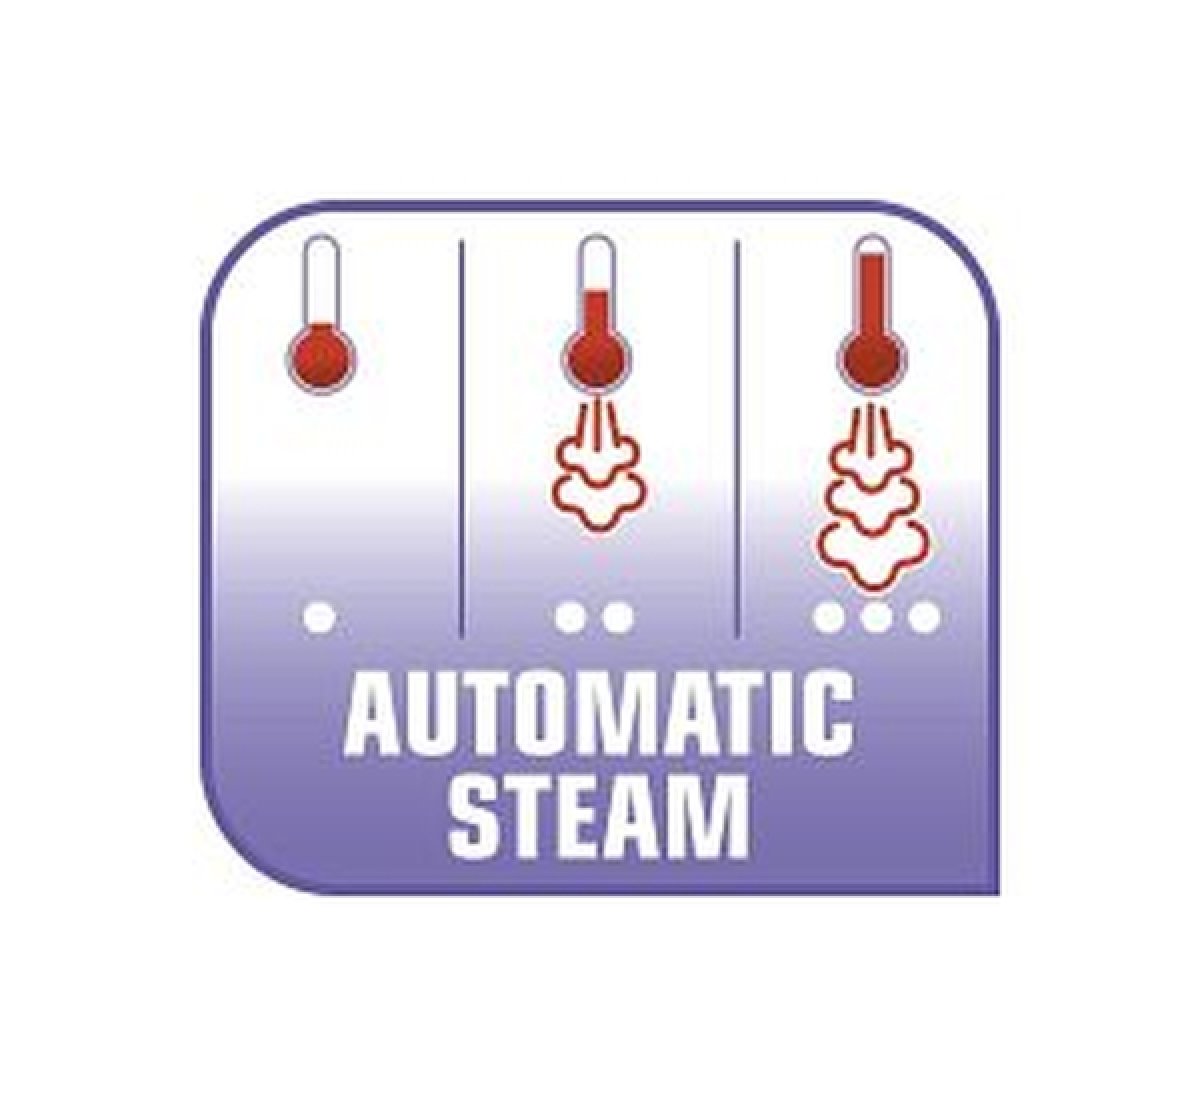 Nastavenie Automatic Steam: volí správne množstvo pary pre každý druh odevu